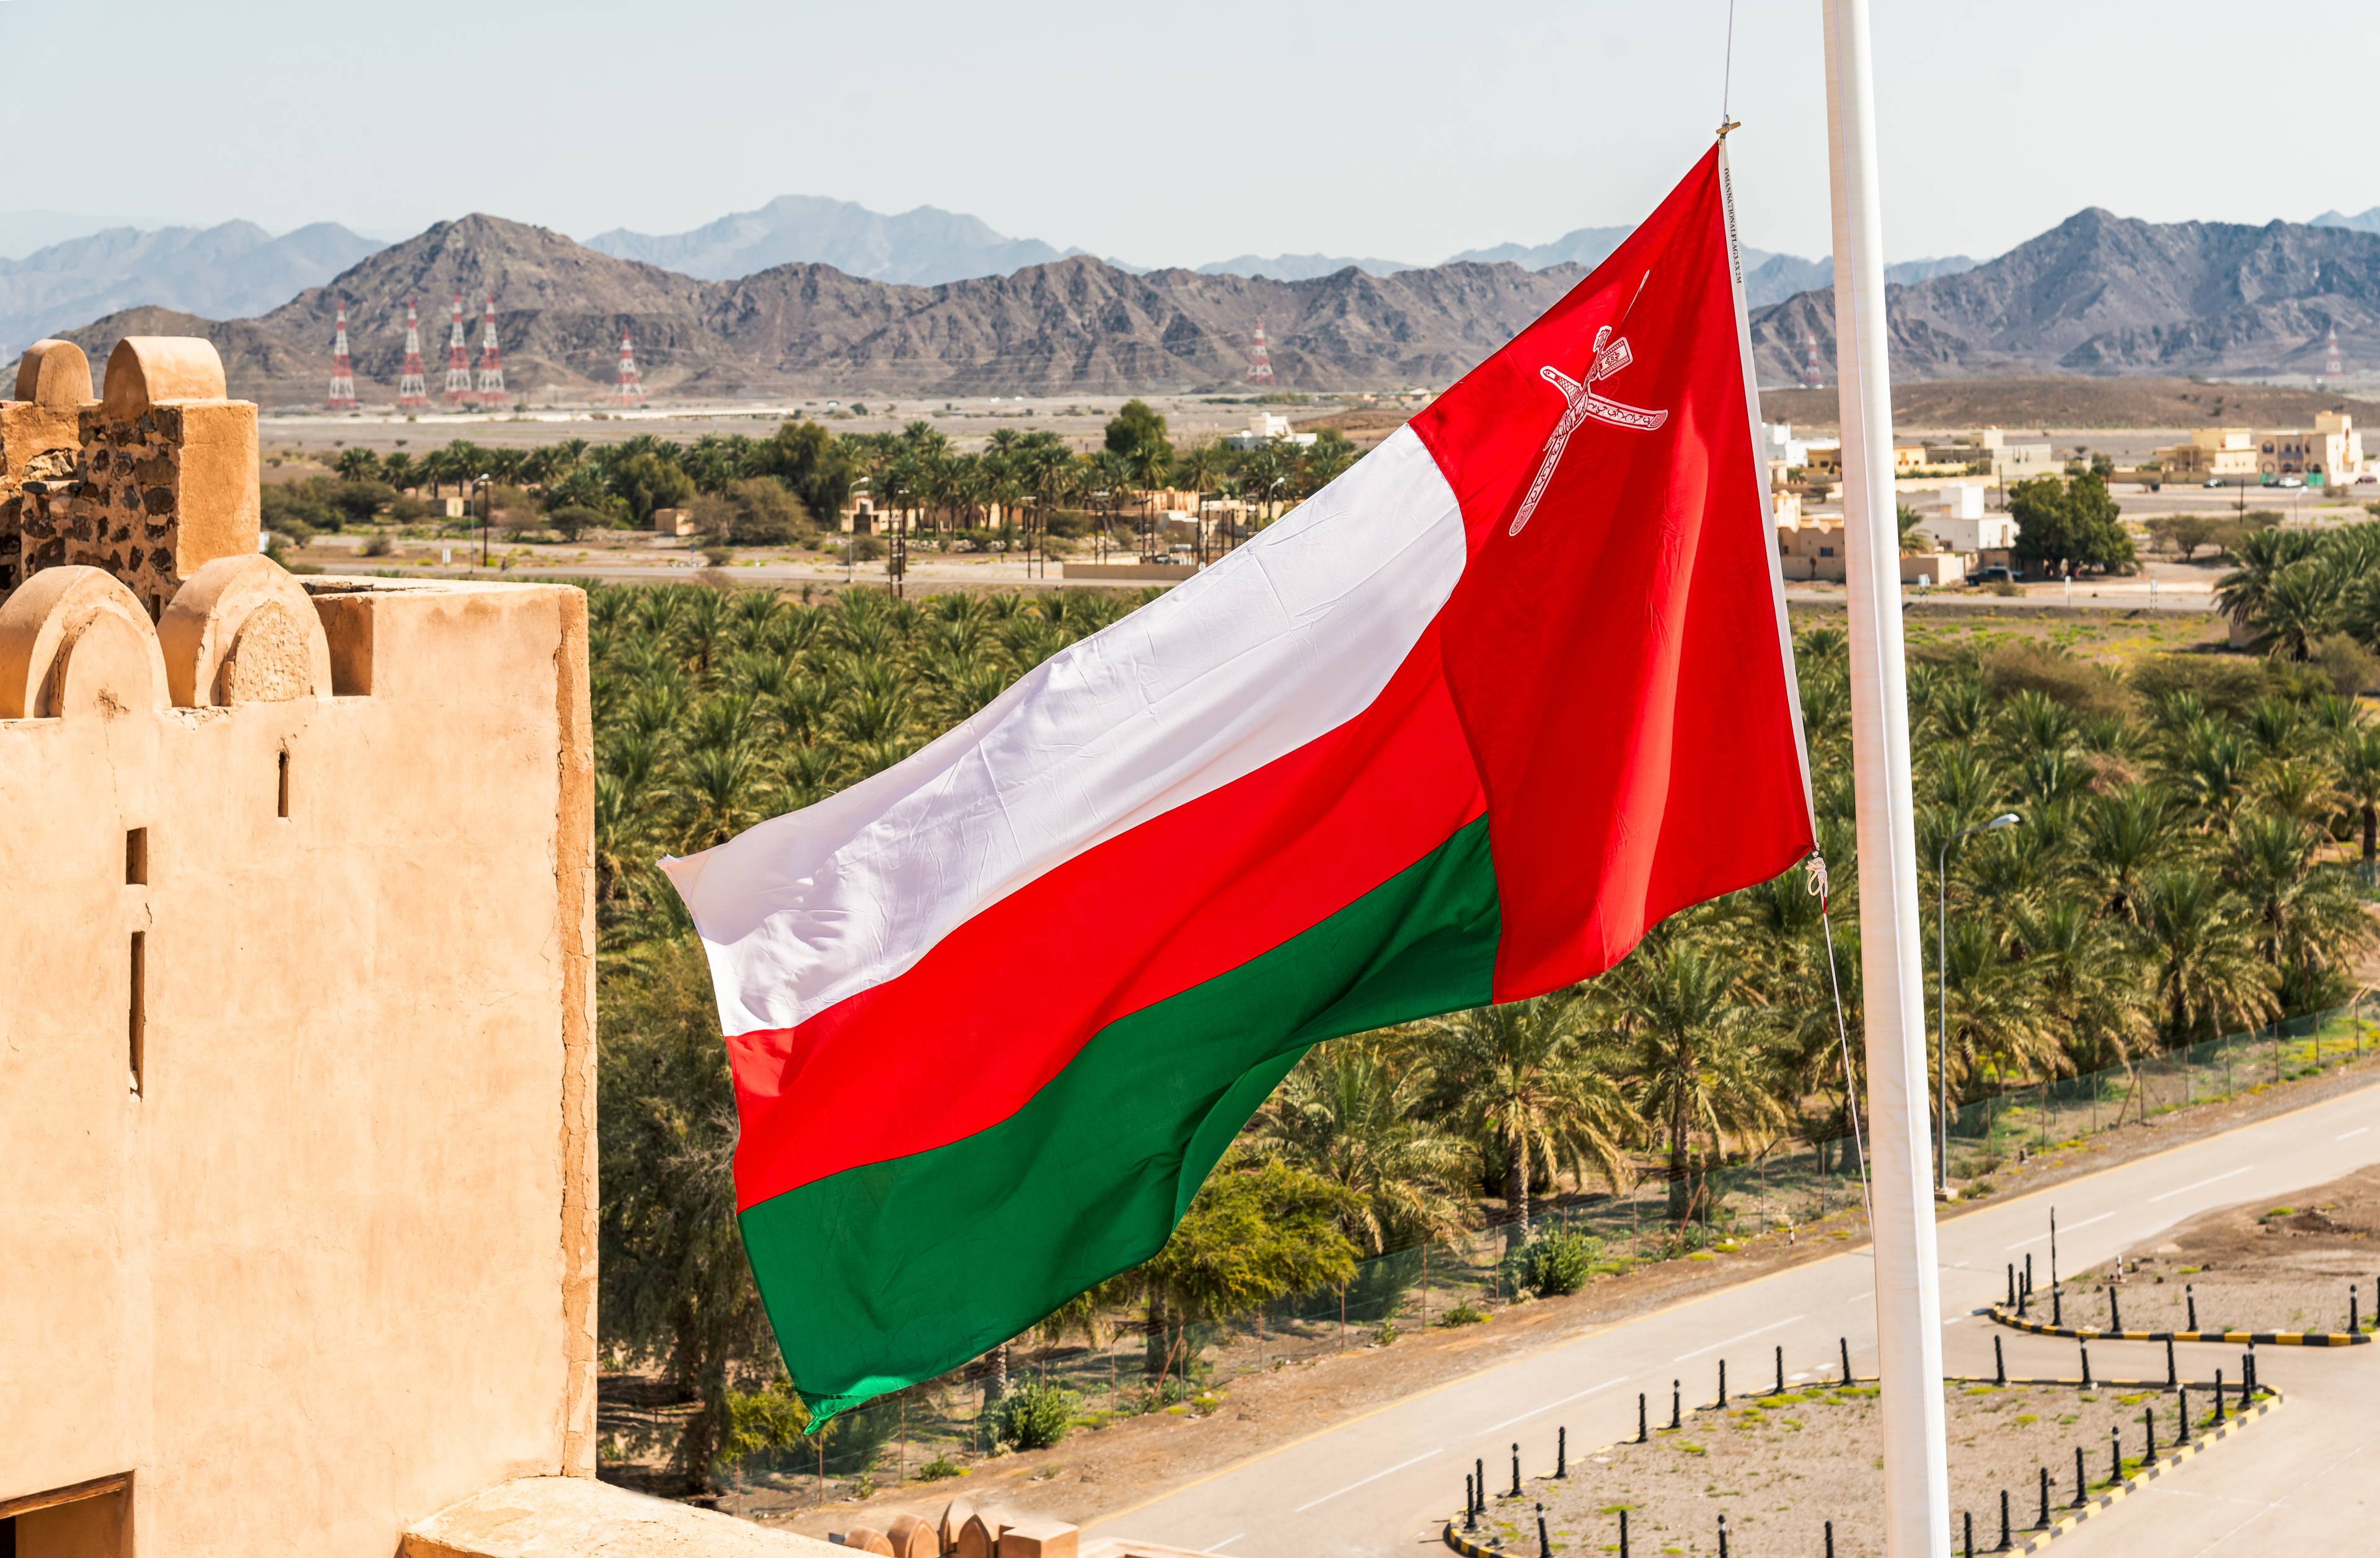 Tour completo dell’Oman